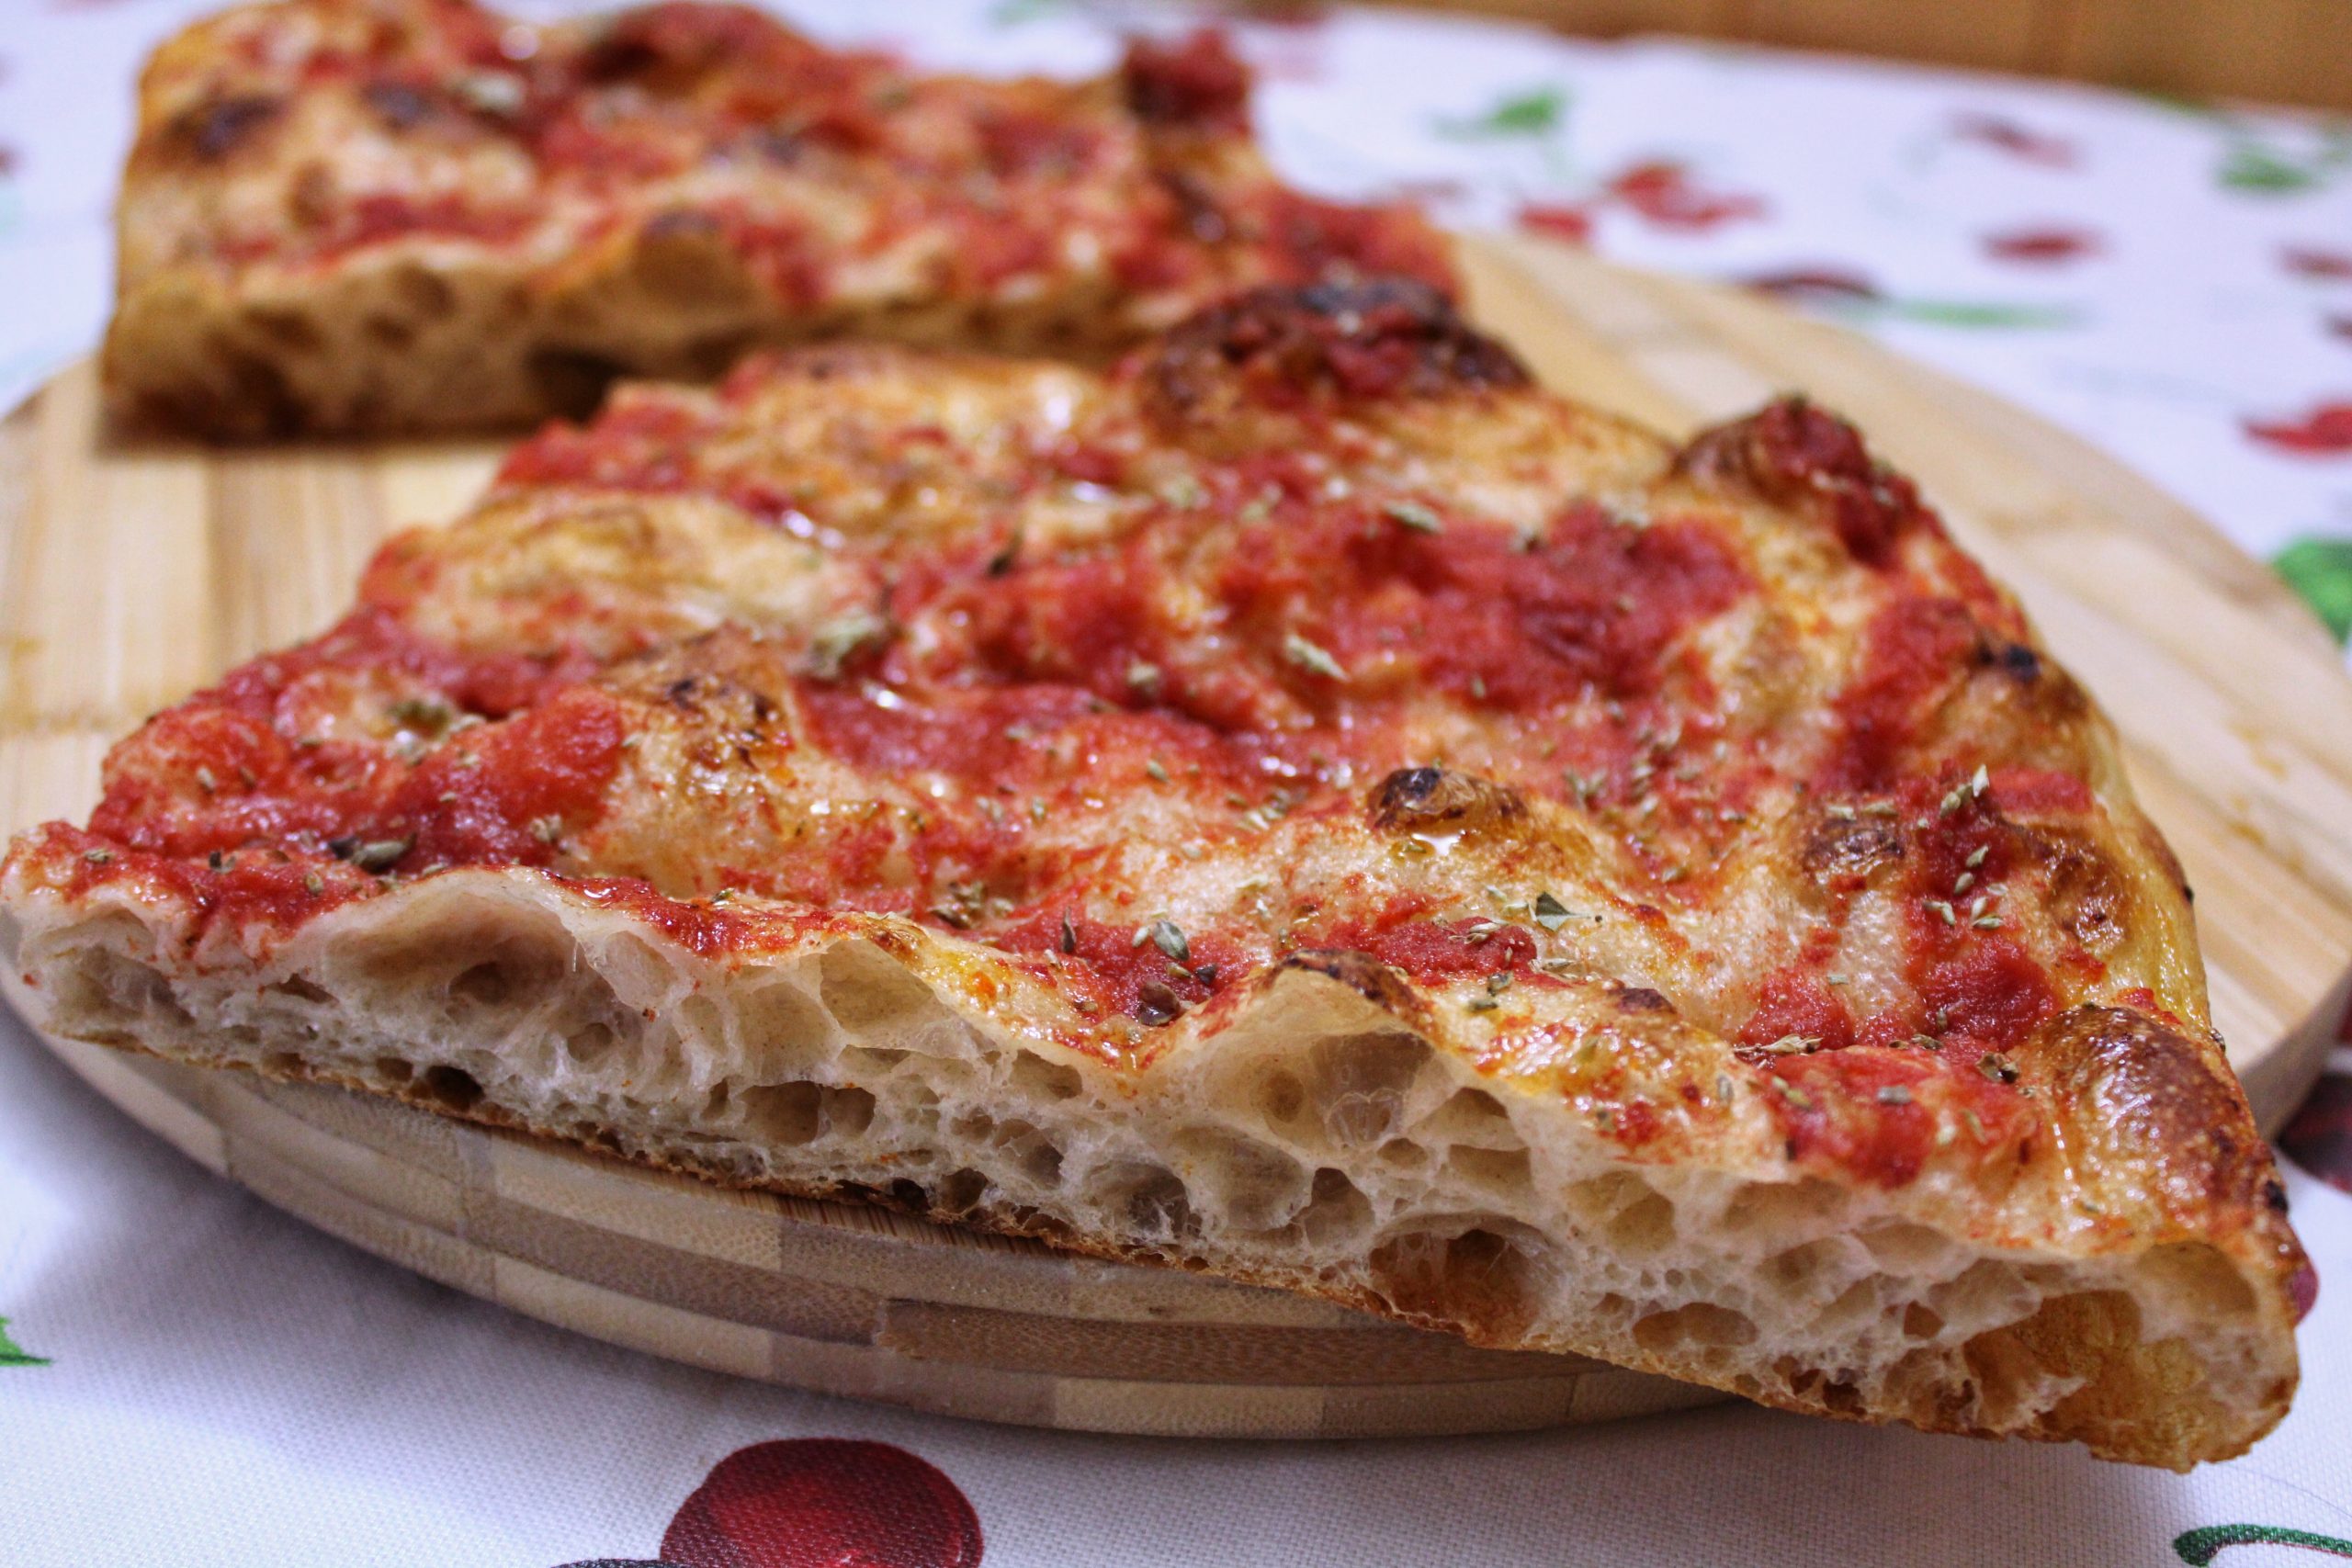 Pizza in teglia romana - Trancio teglia rossa dall'alto